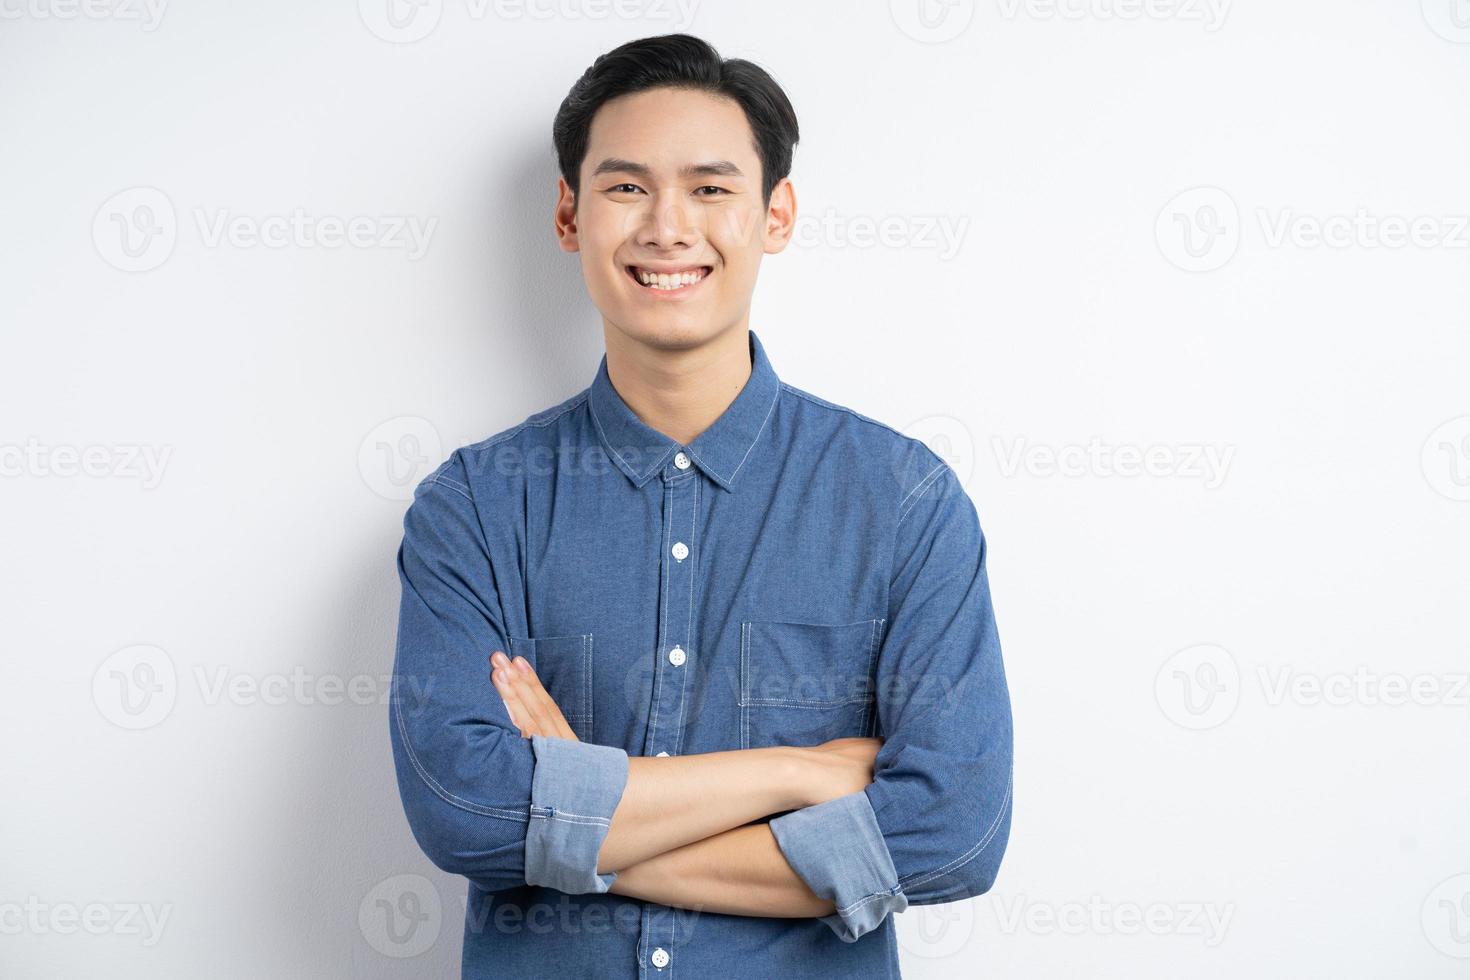 foto van een Aziatische man die met zijn armen over elkaar staat en lacht op een witte achtergrond white